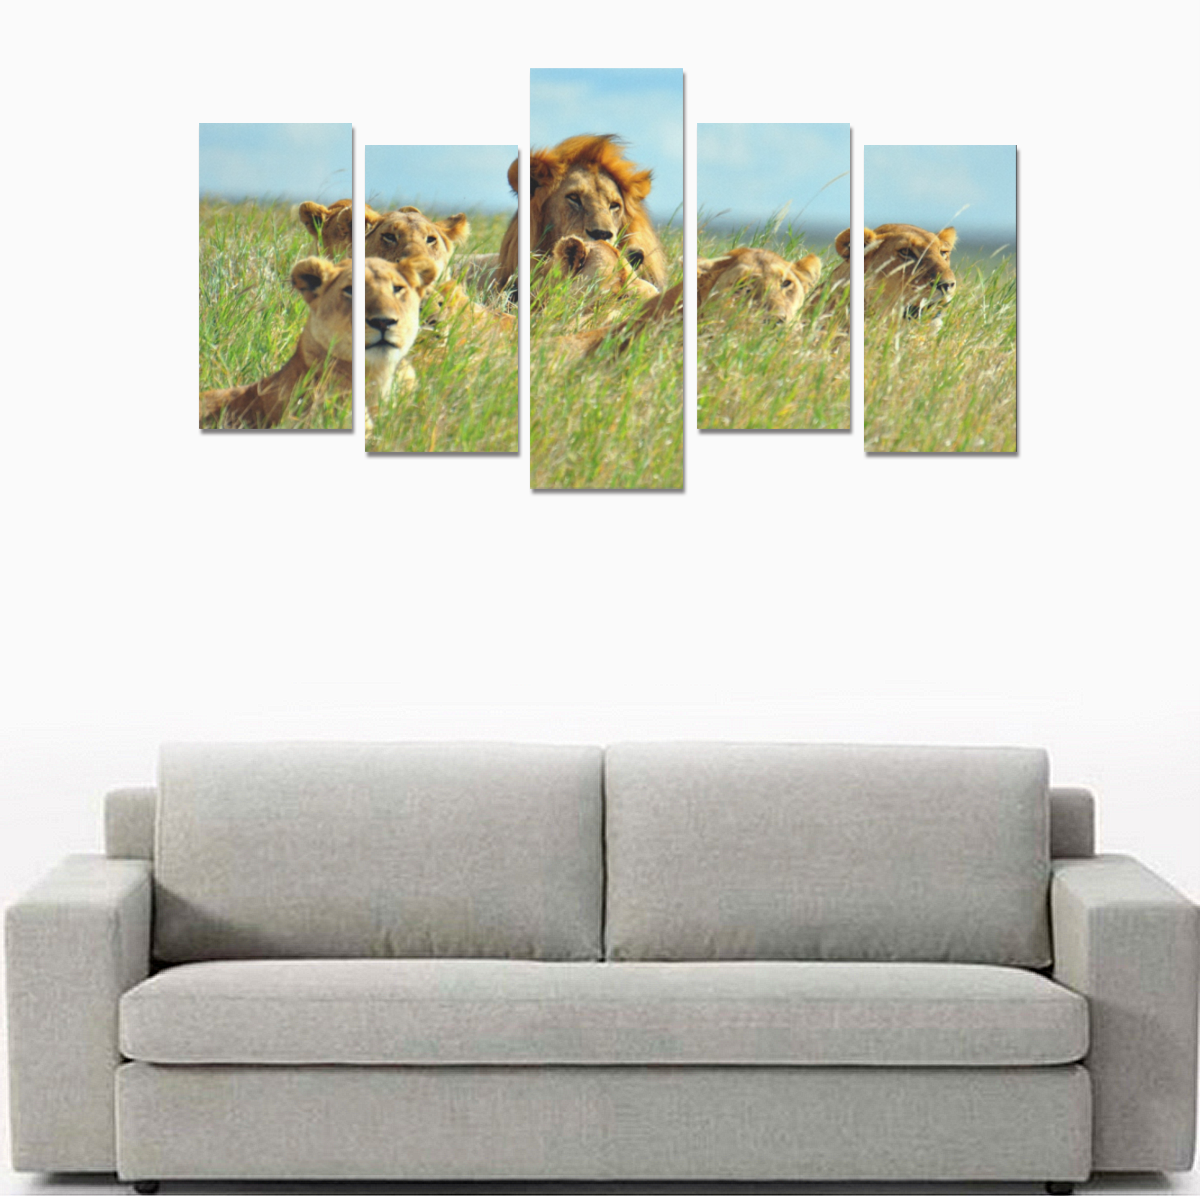 lion family Canvas Print Sets E (No Frame)